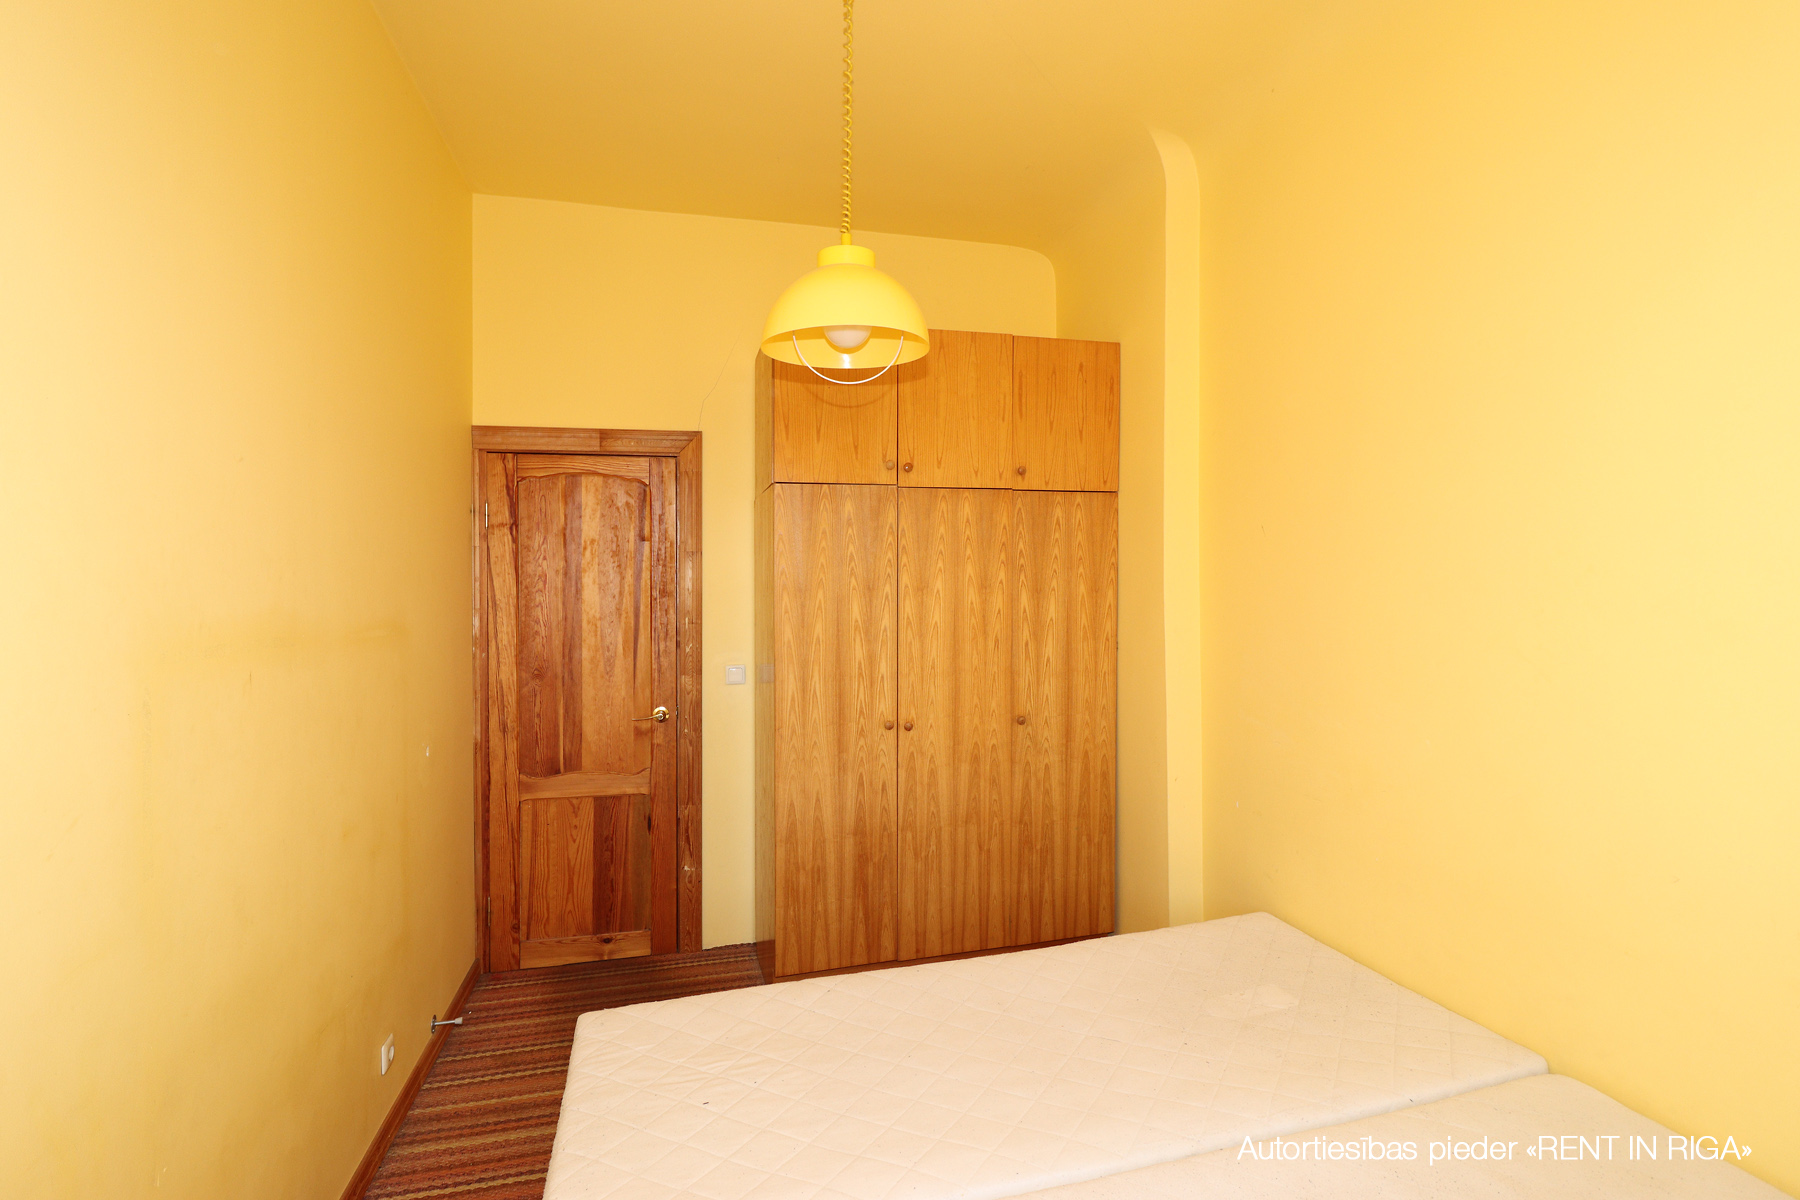 Apartment for rent, Dzirnavu street 115A - Image 1